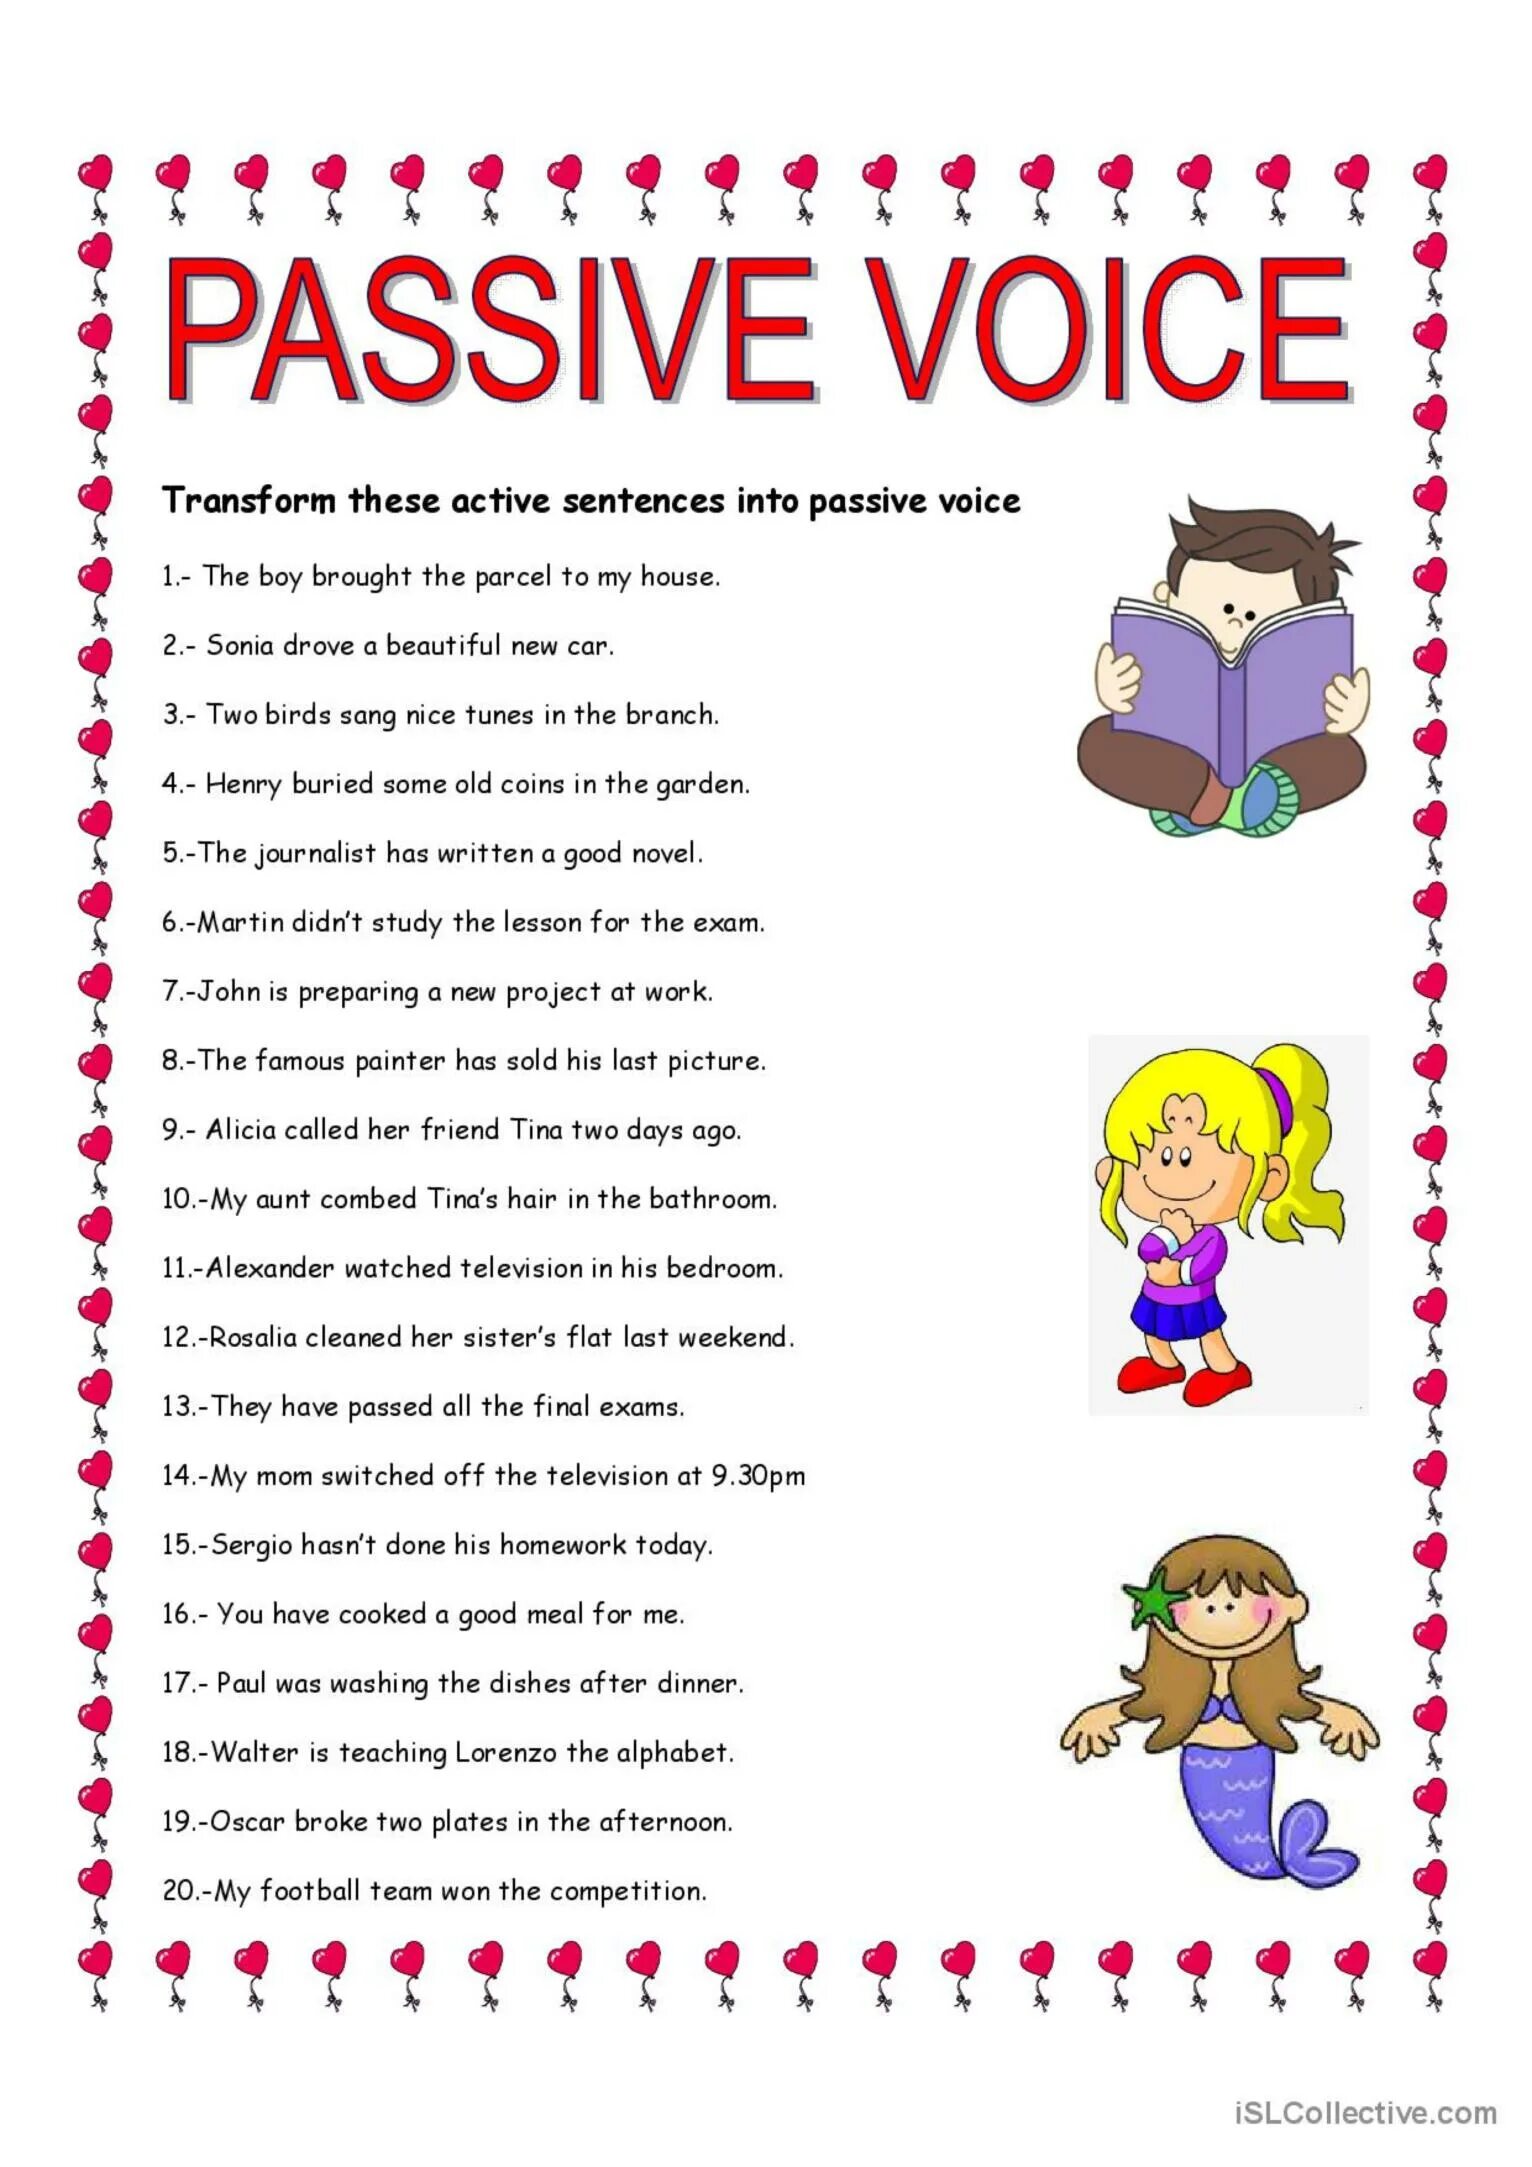 Passive Voice speaking activities for Elementary. Passive Voice games and activities. Passive Voice Sheet activities. Passive Voice questions Worksheets. Passive voice games